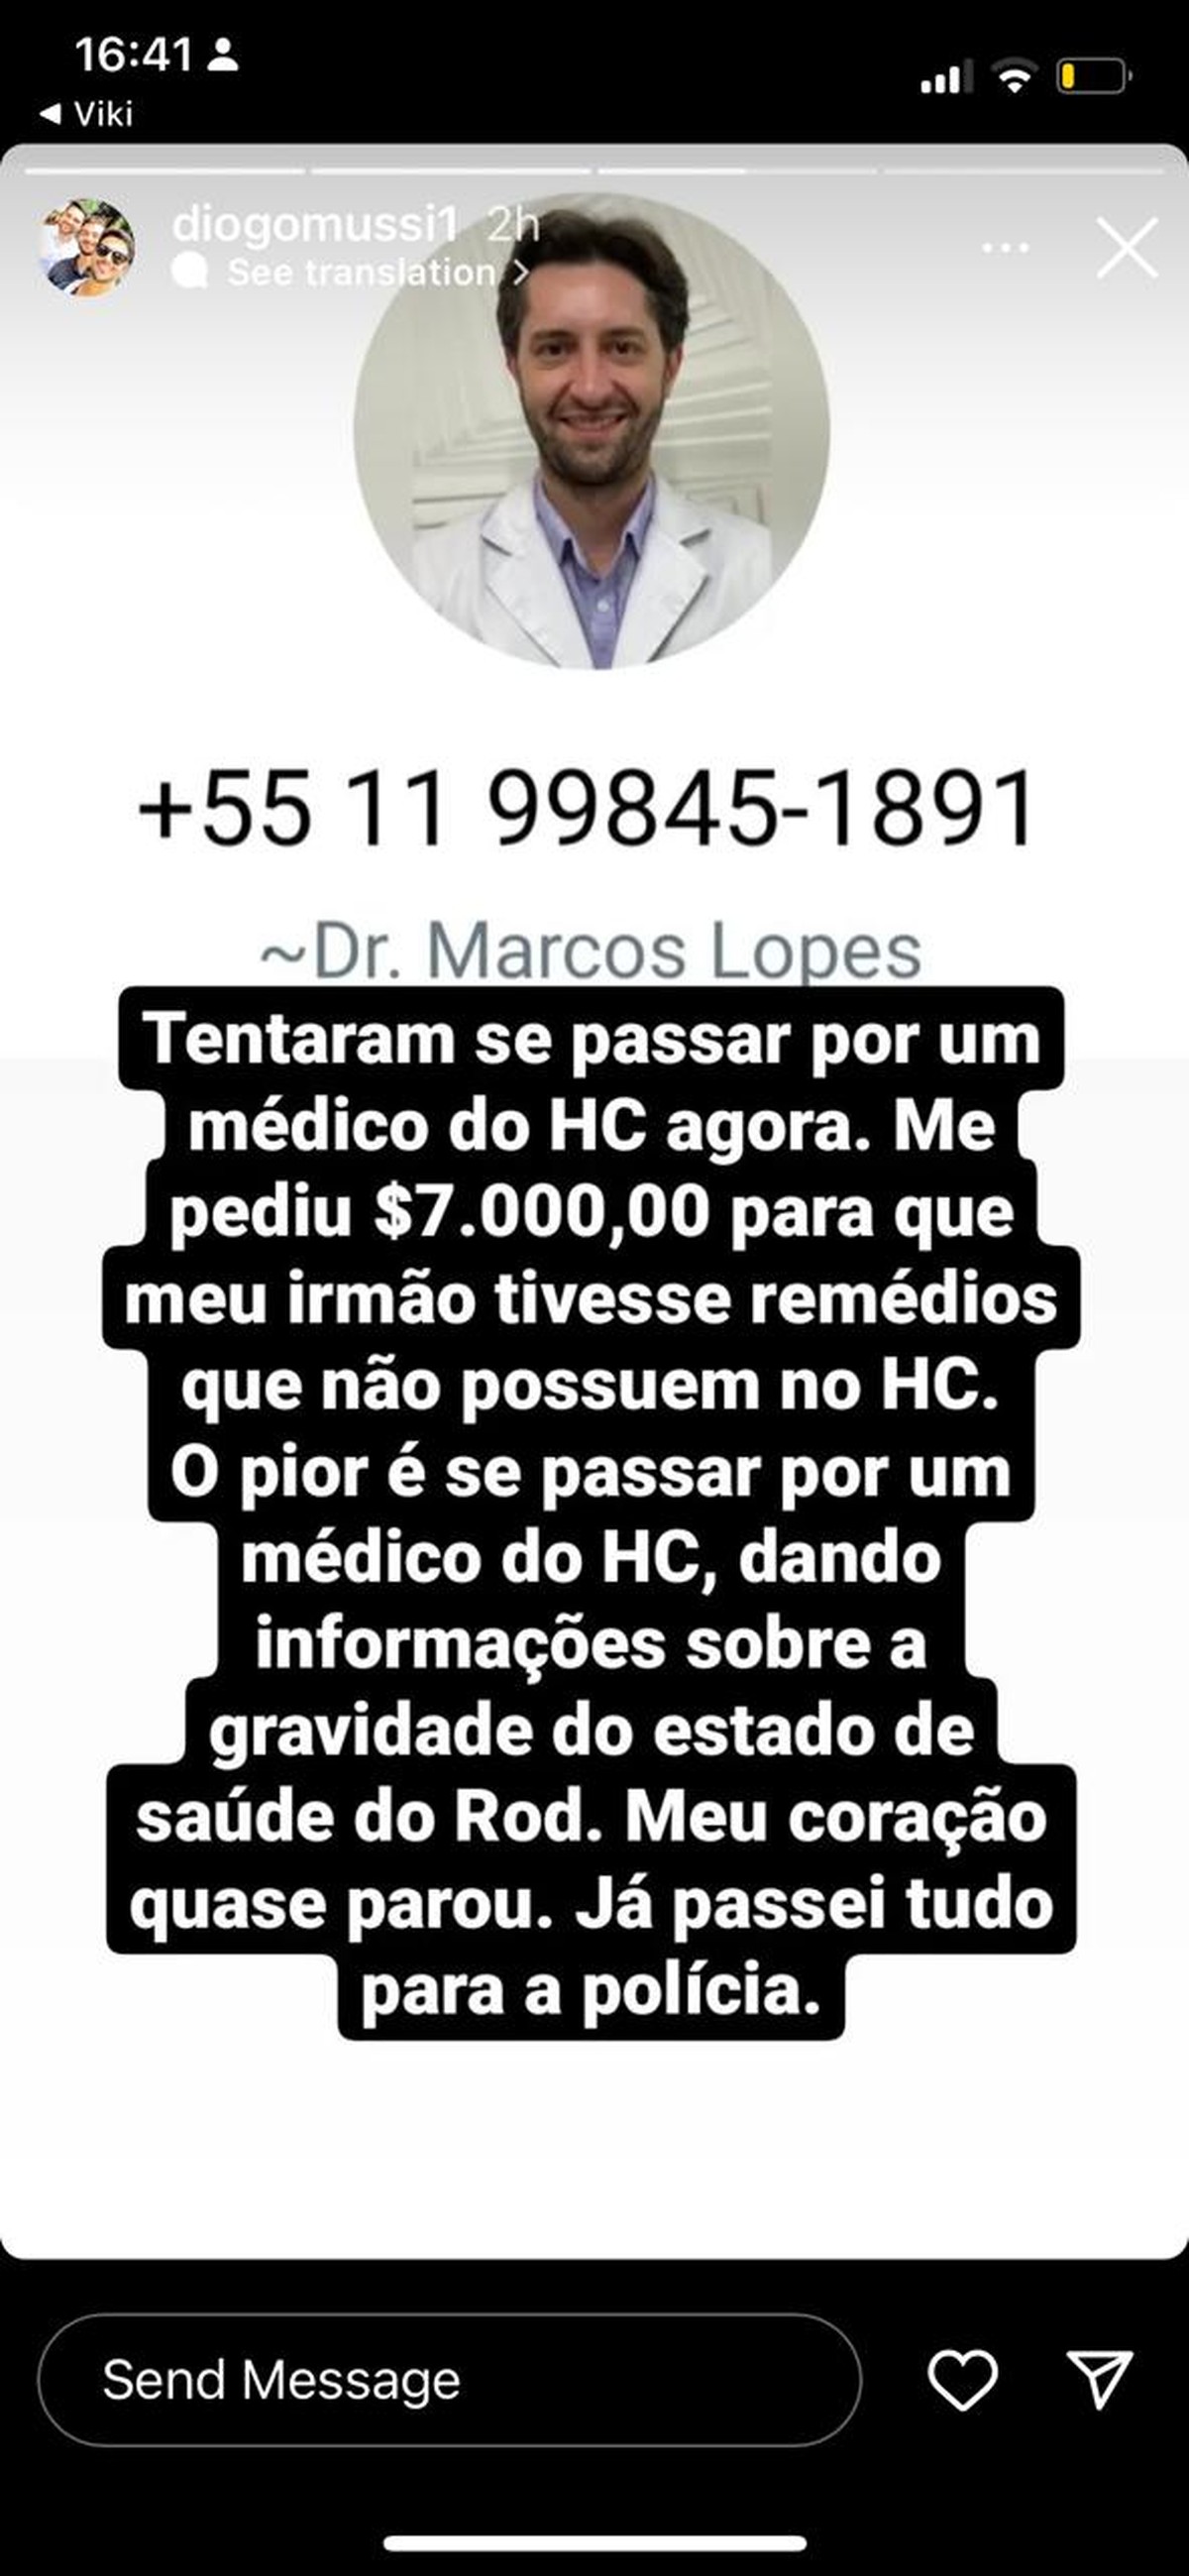 Irmão de Rodrigo Mussi denuncia tentativa de golpe de falso médico em medical institution de SP |  São Paulo